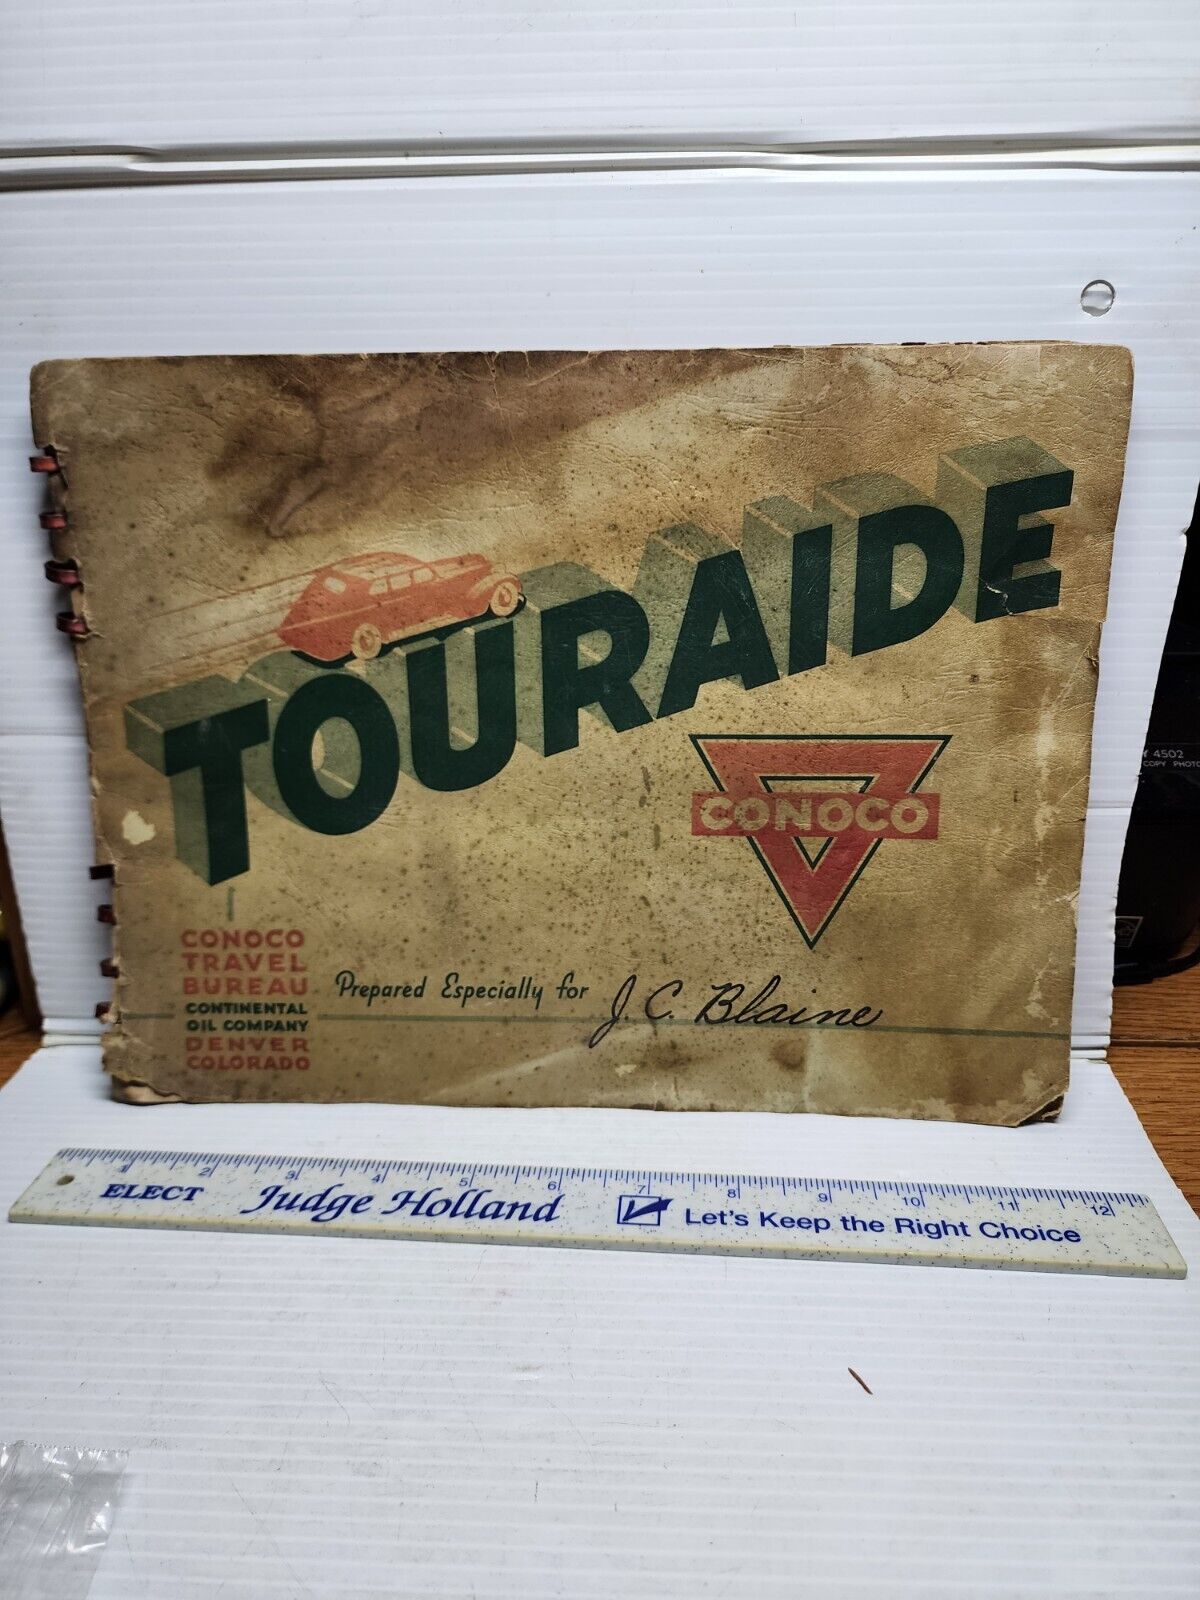 Vintage 1938 Conoco Touraide Travel Guide Map Booklet Denver Colorado